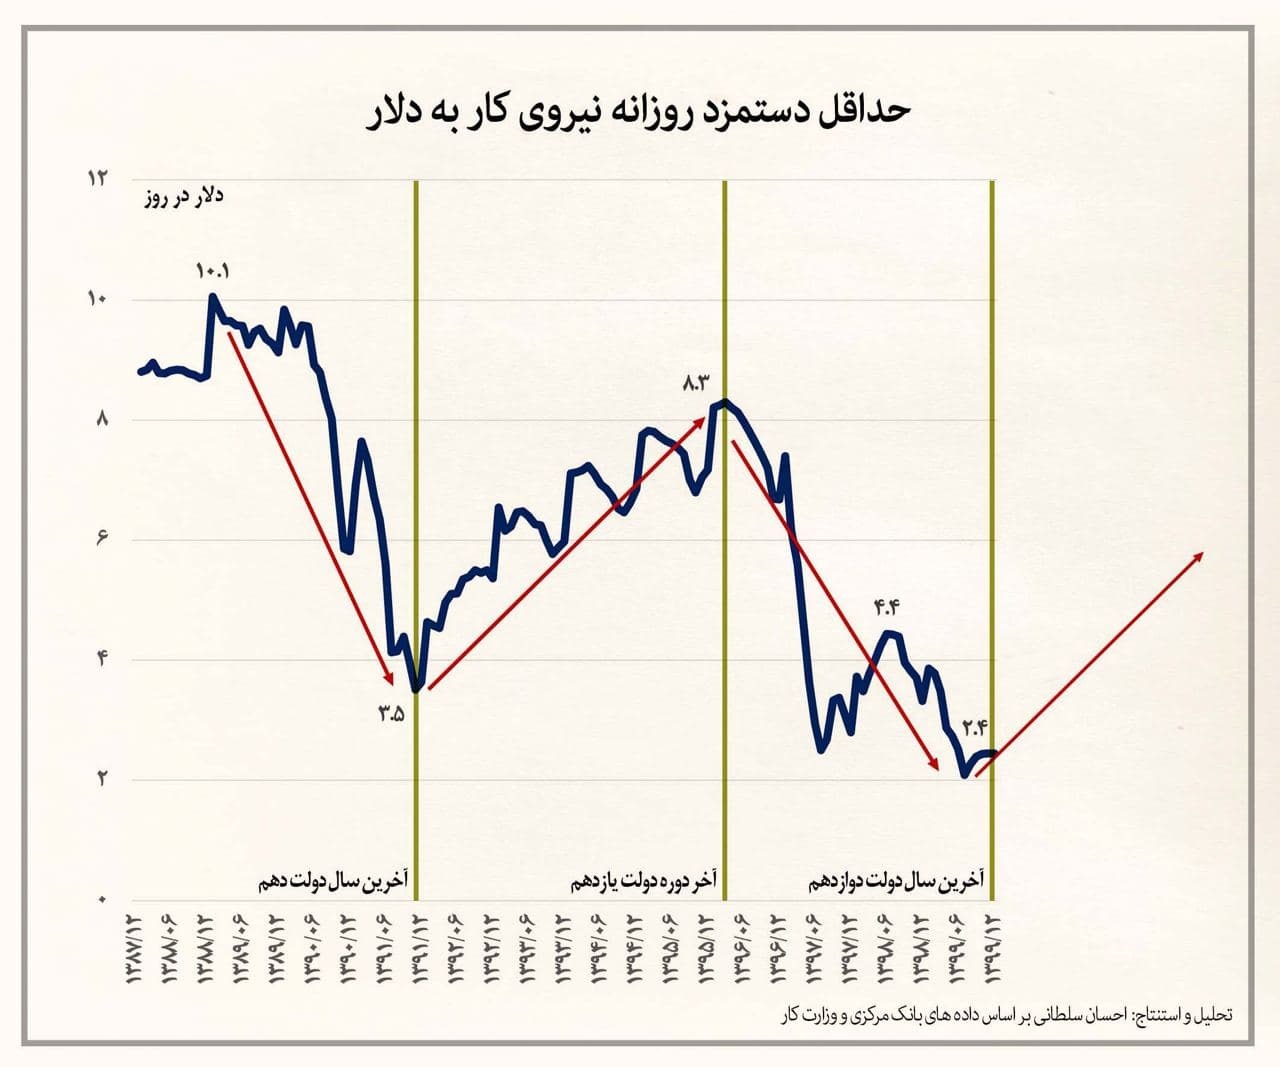 حقوق روزانه هر کارگر ایرانی چند دلار می شود؟ + نمودار